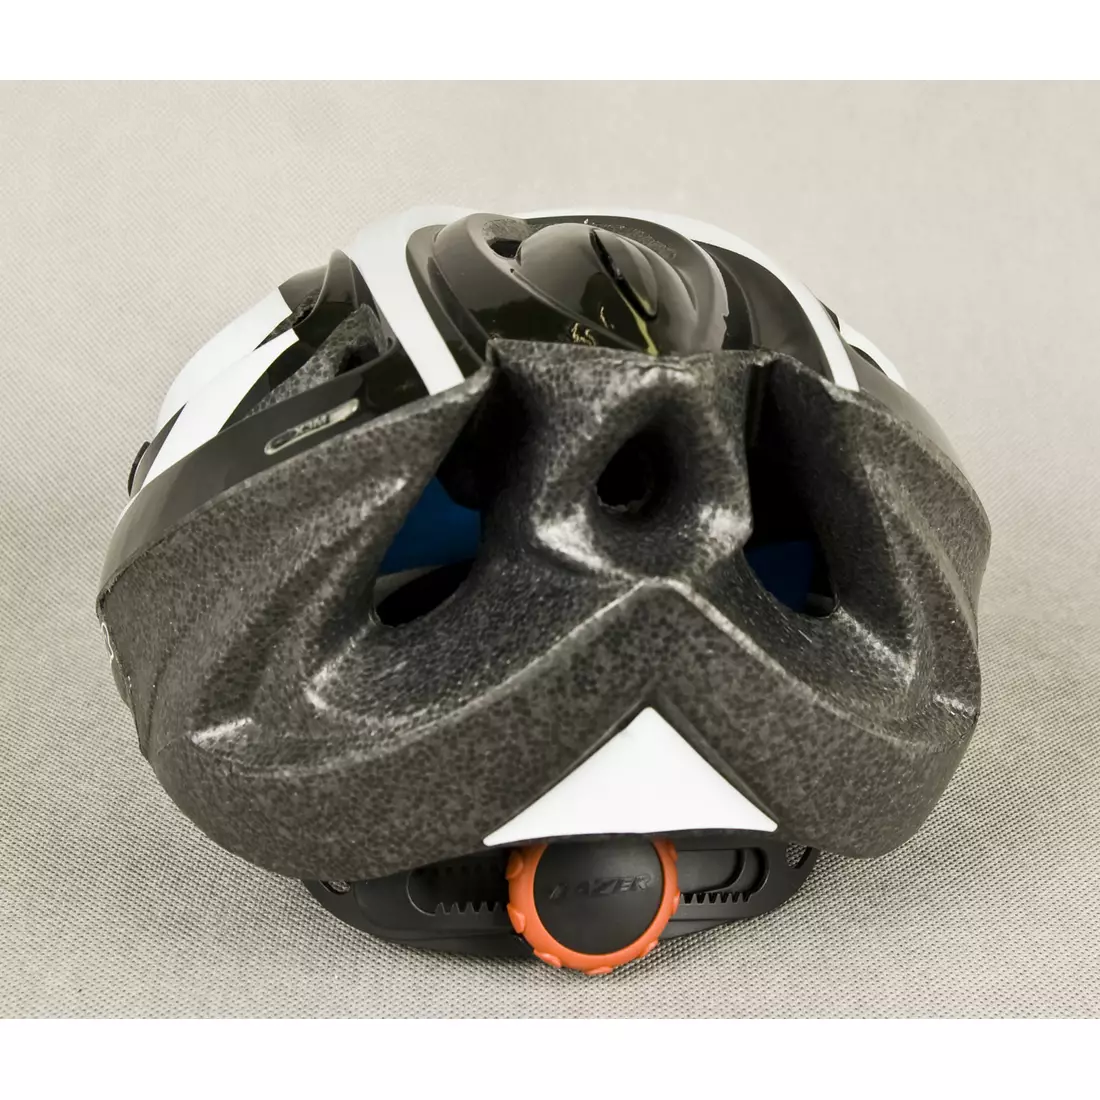 MTB cyklistická přilba LAZER X3M, černo-stříbrná